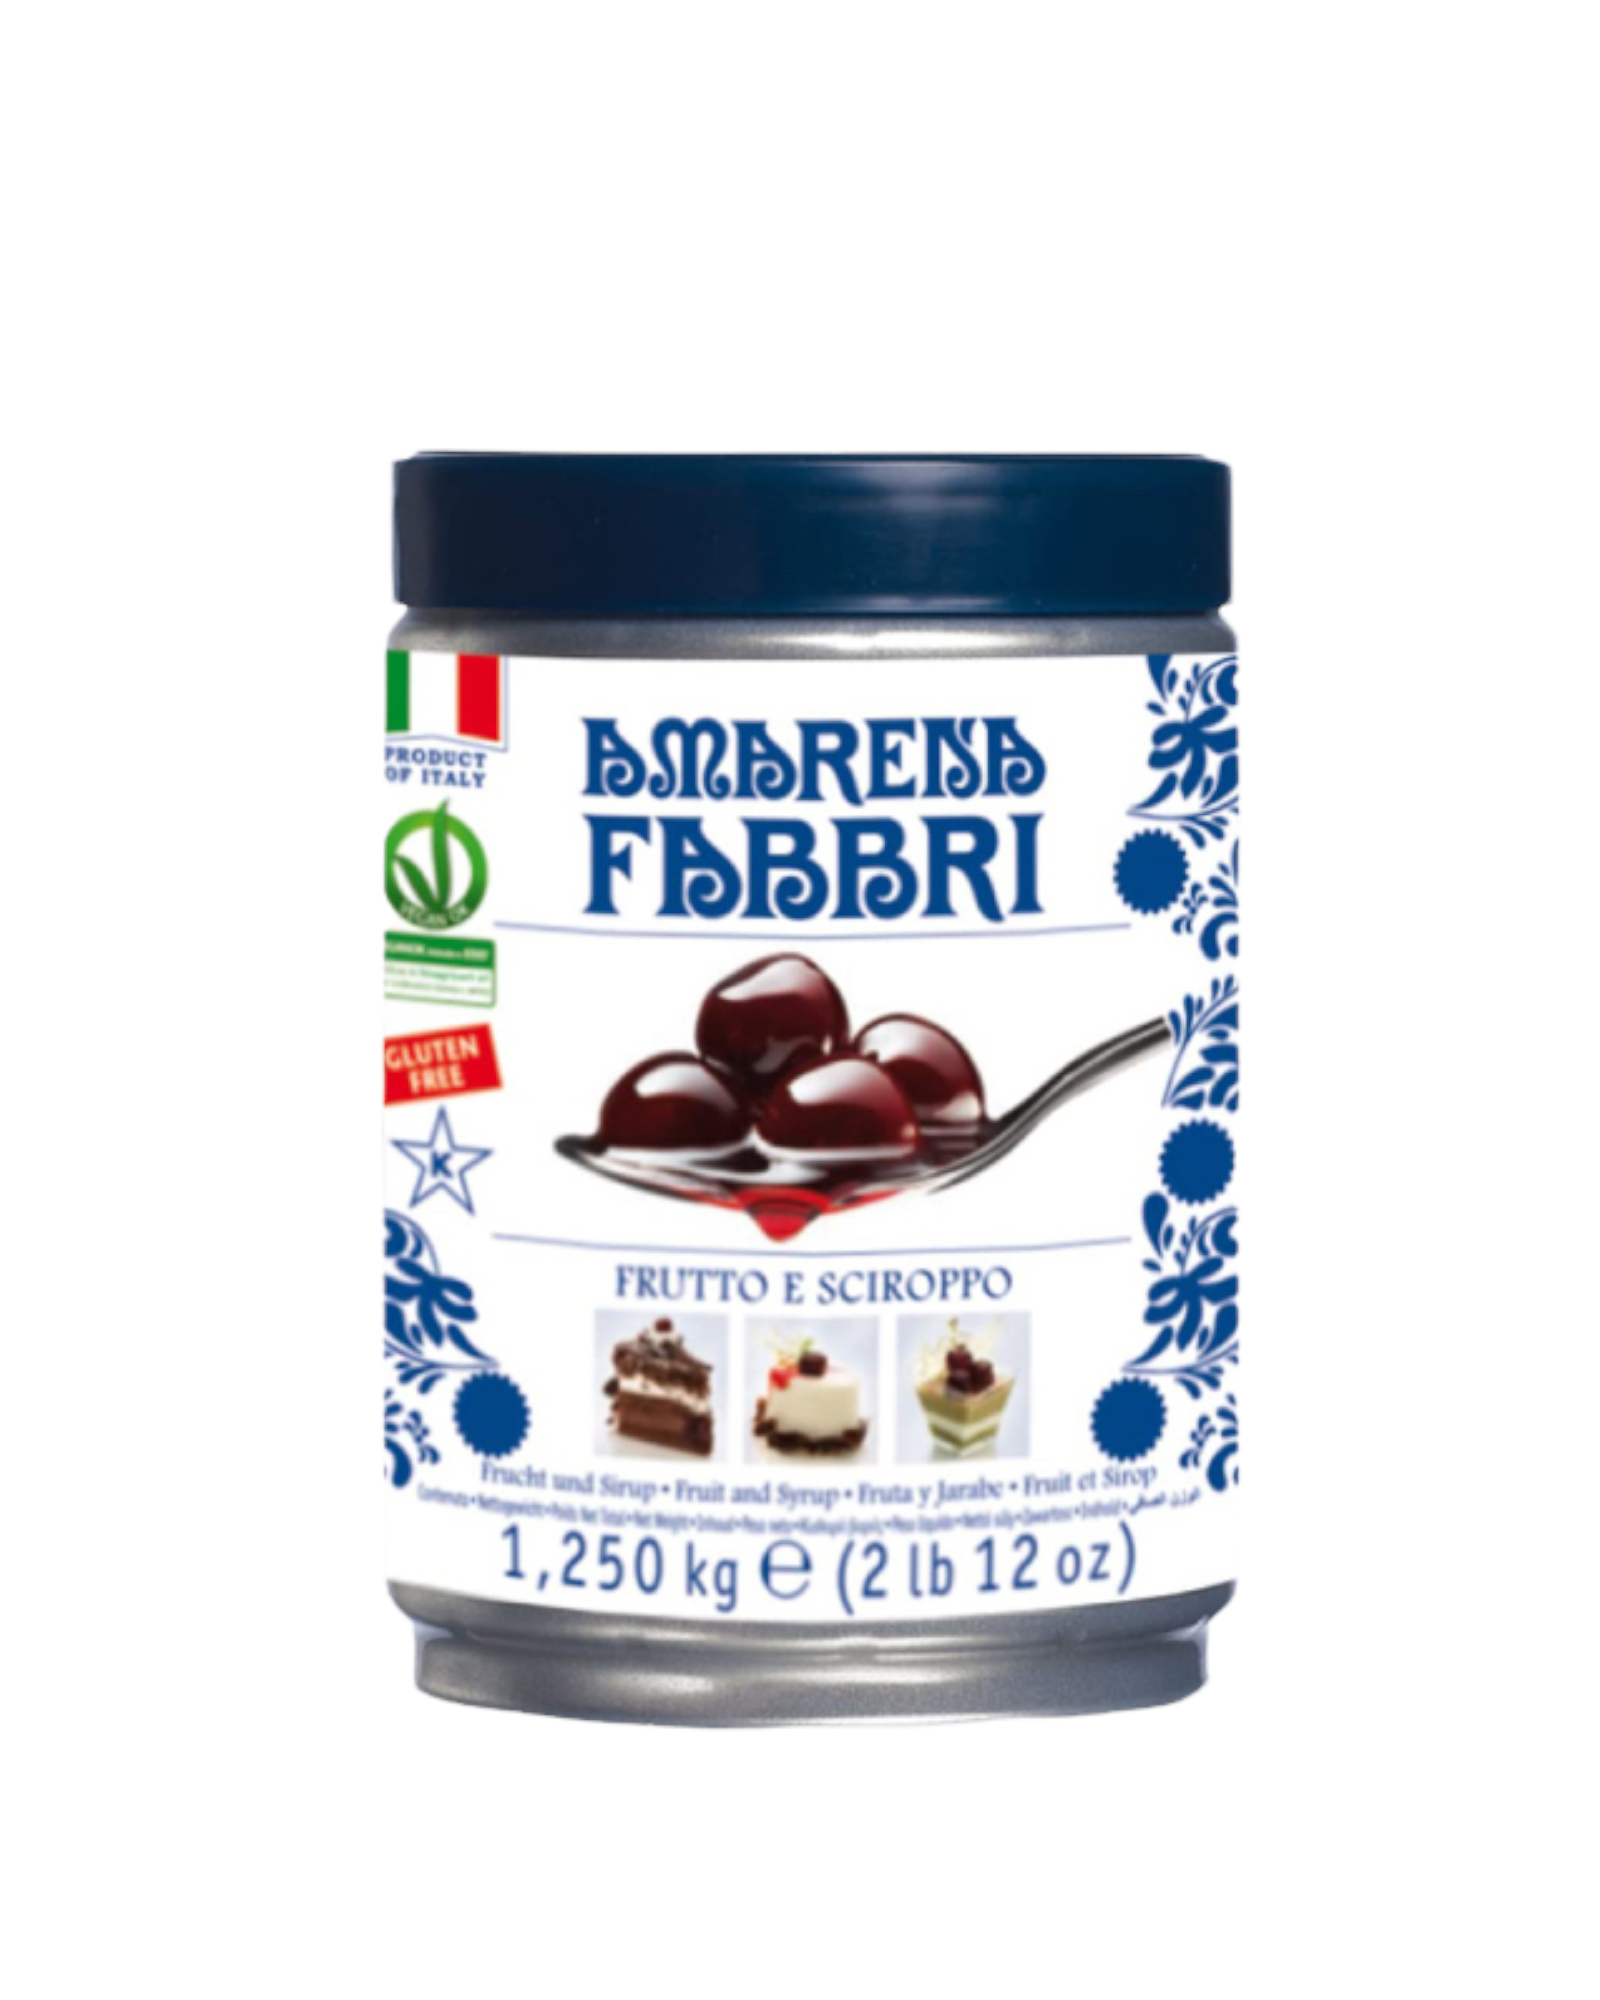 Fabbri - Amarena cherries tin (1.25kg)